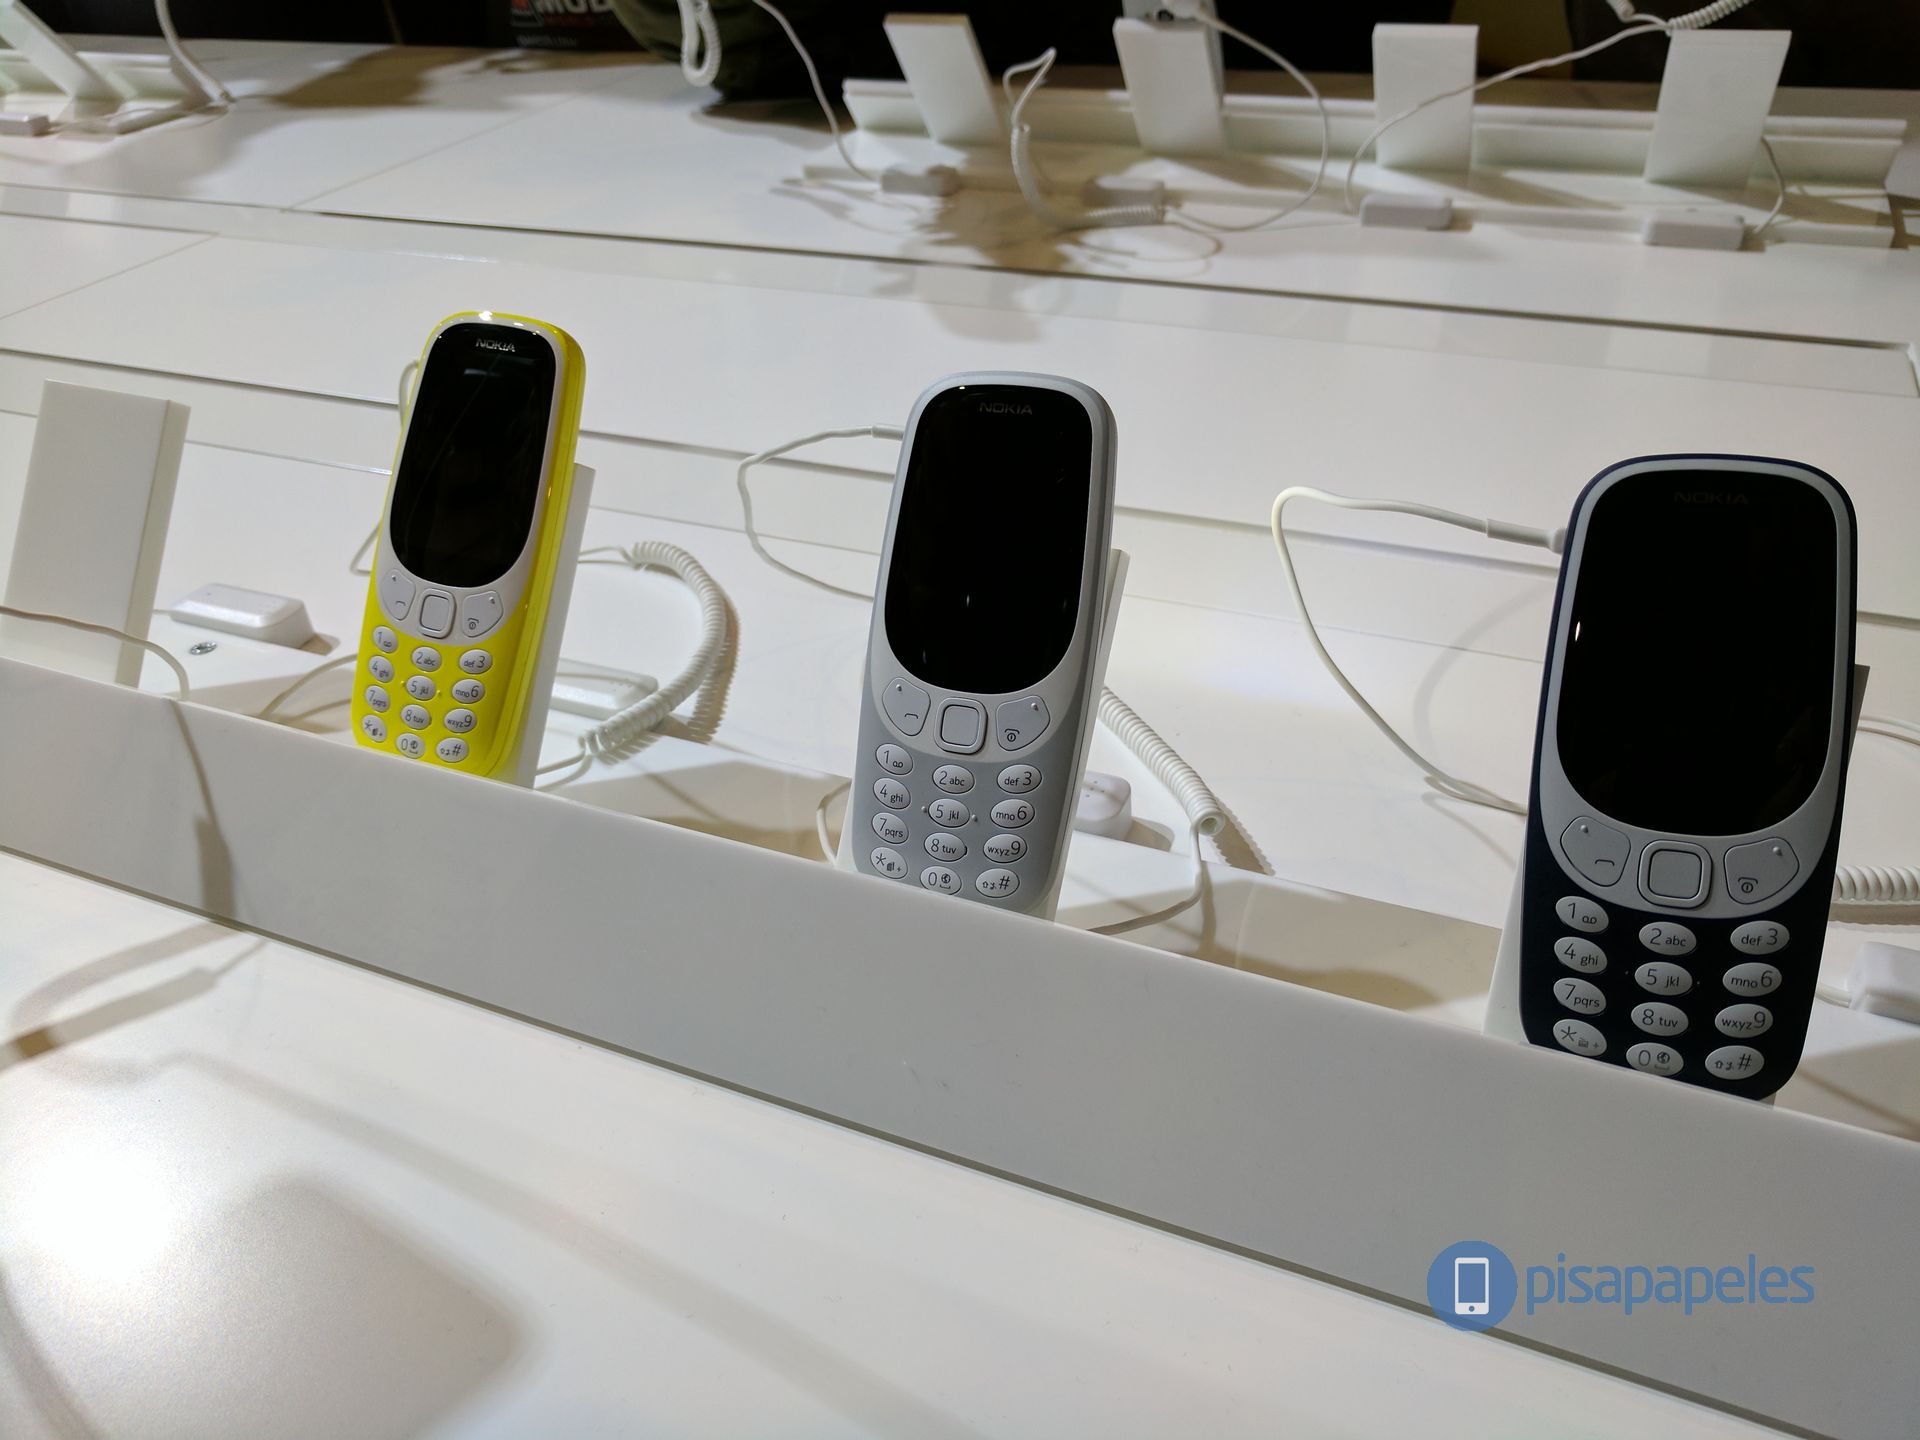 Первые впечатления Nokia 3310 # MWC17